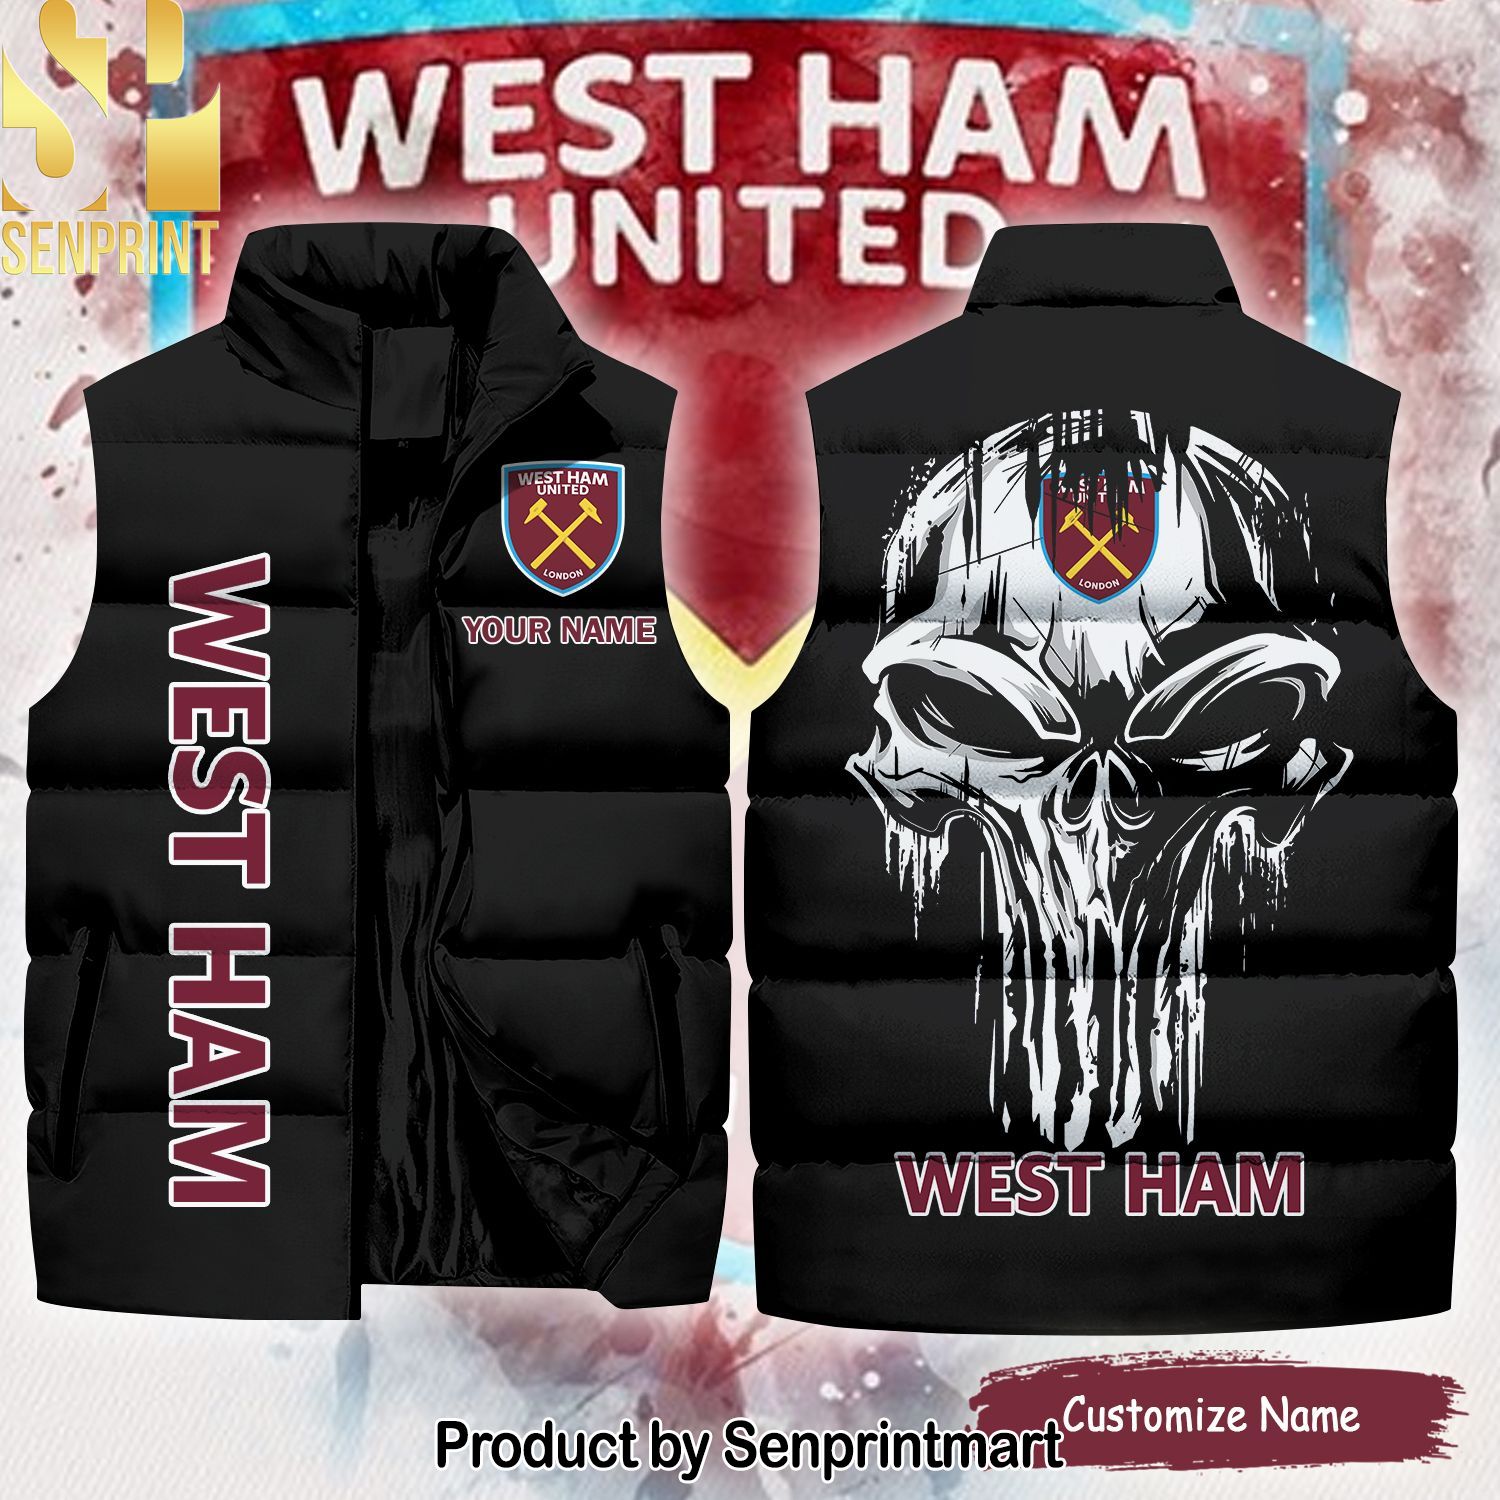 English Premier League West Ham United Skull Hot Fashion Sleeveless Jacket